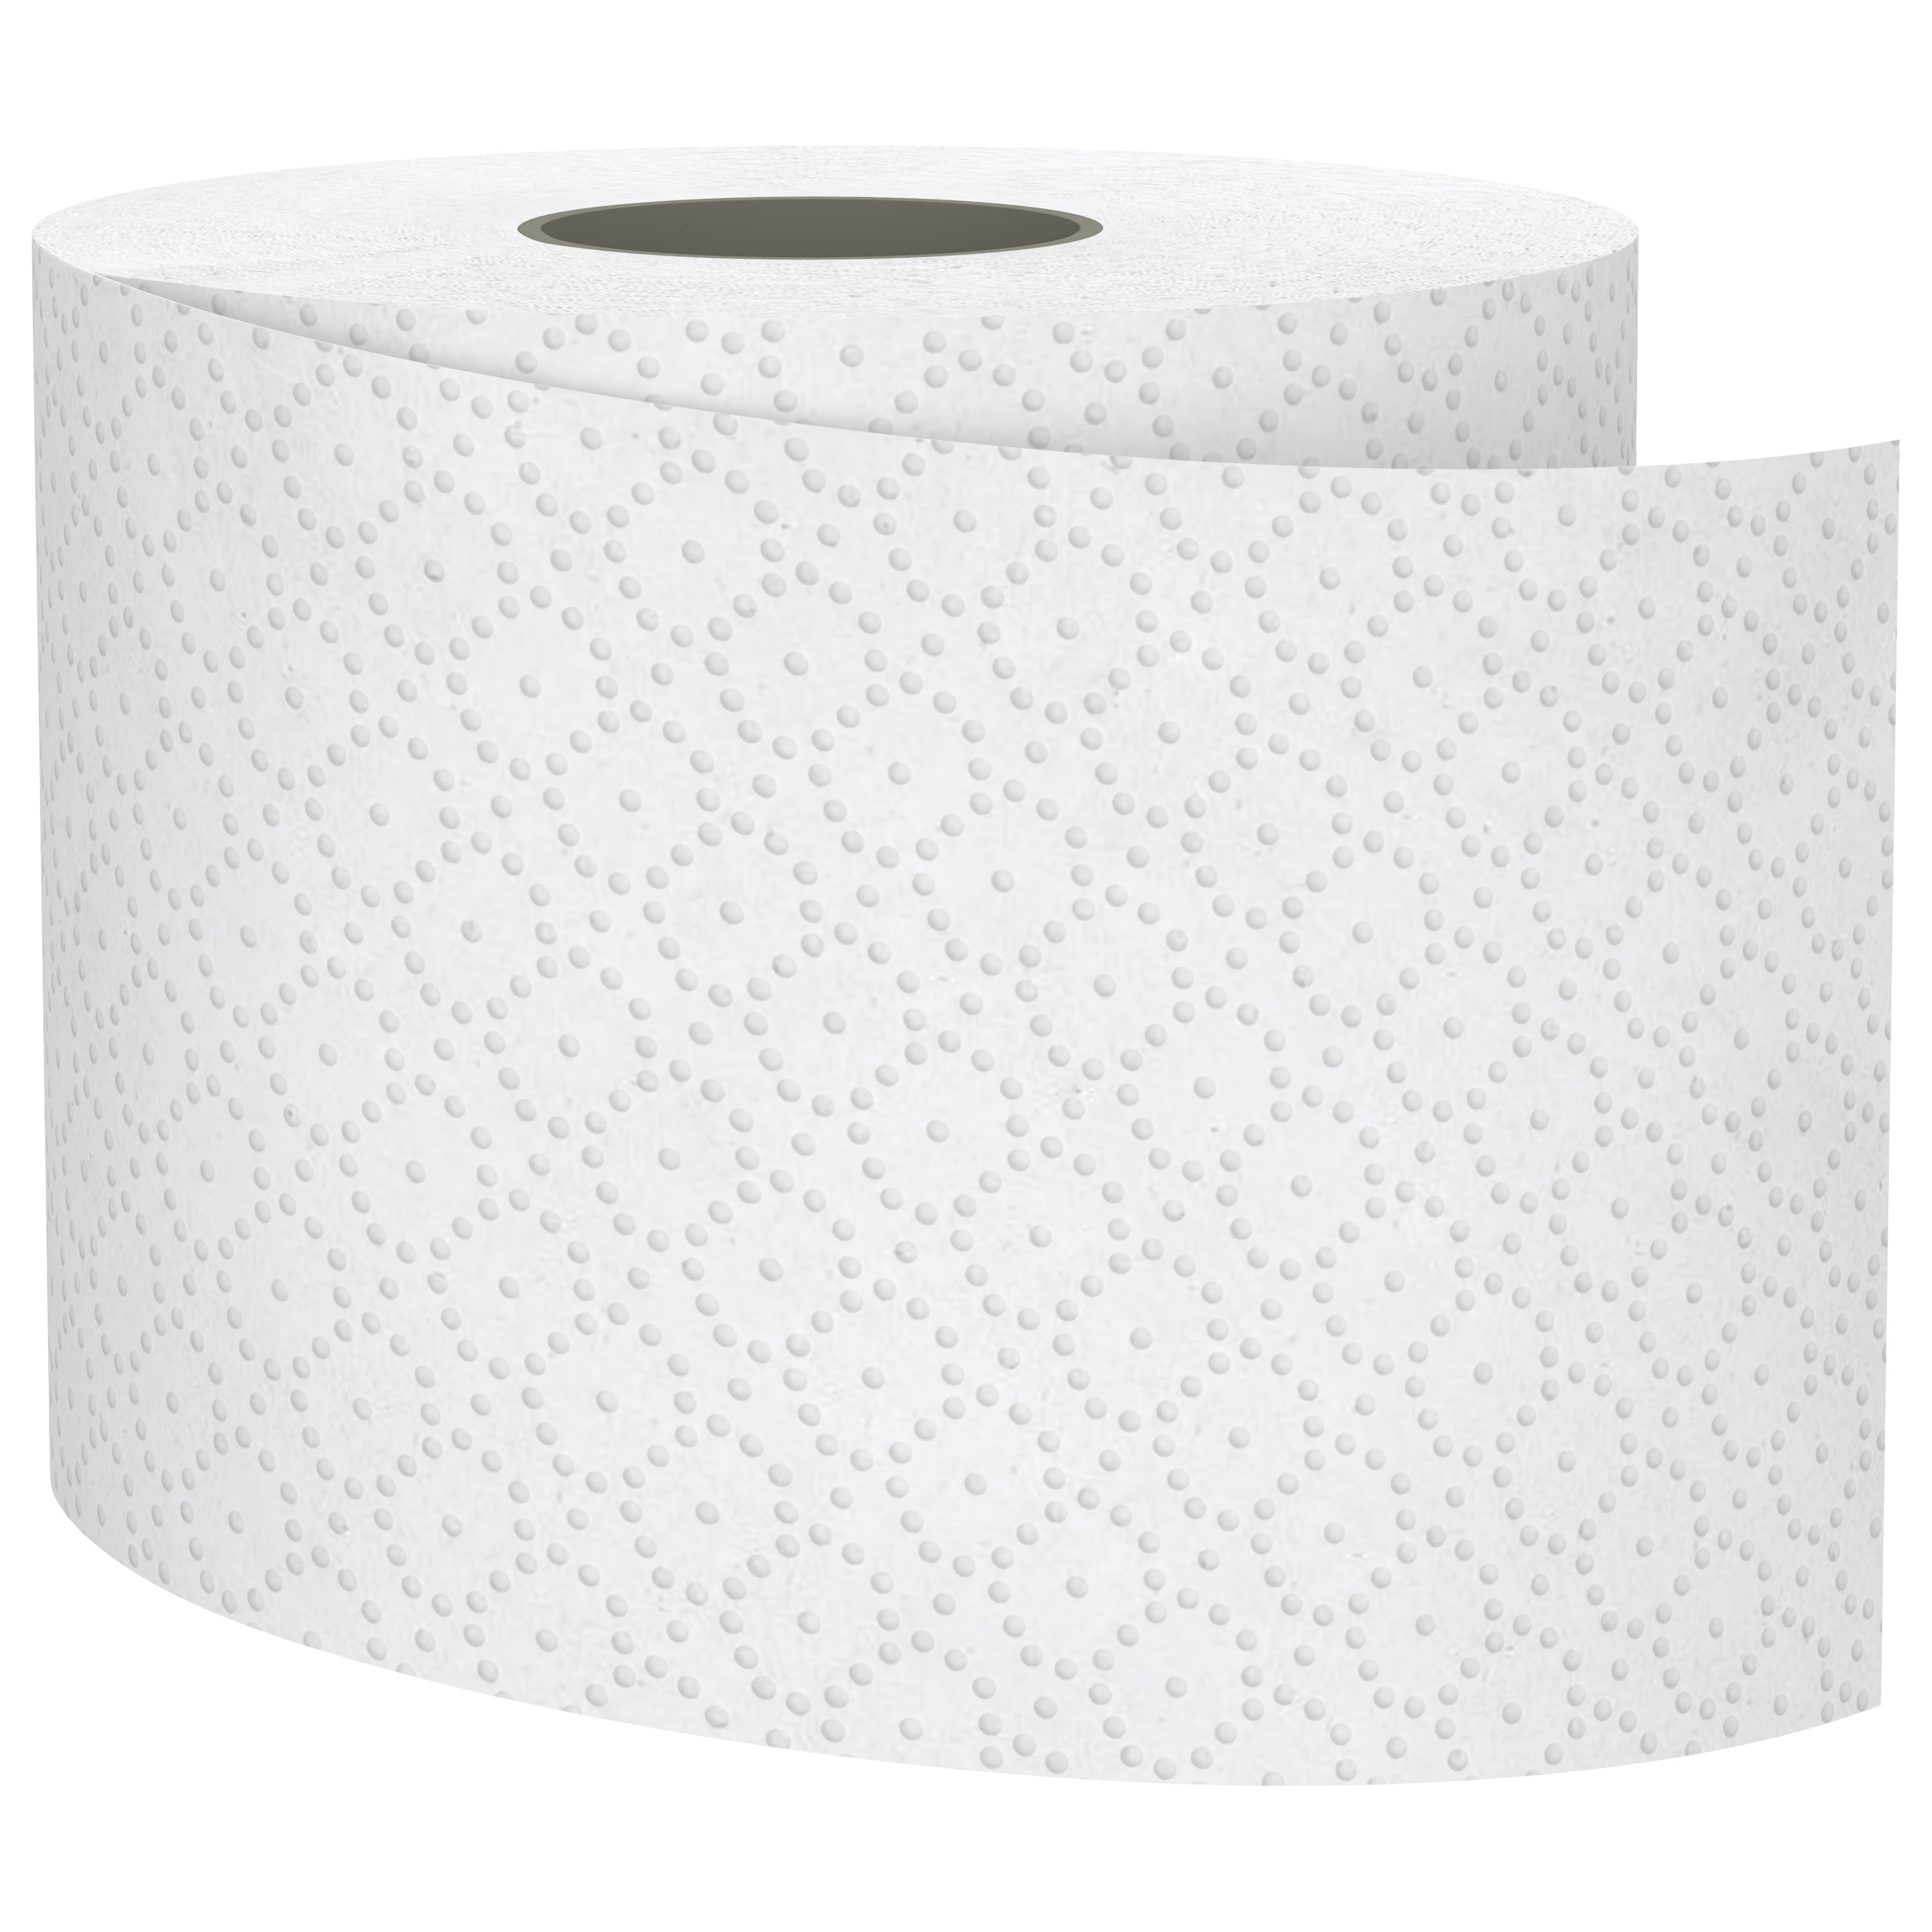 Satino comfort Toilettenpapier, hochweiß, 2-lagig